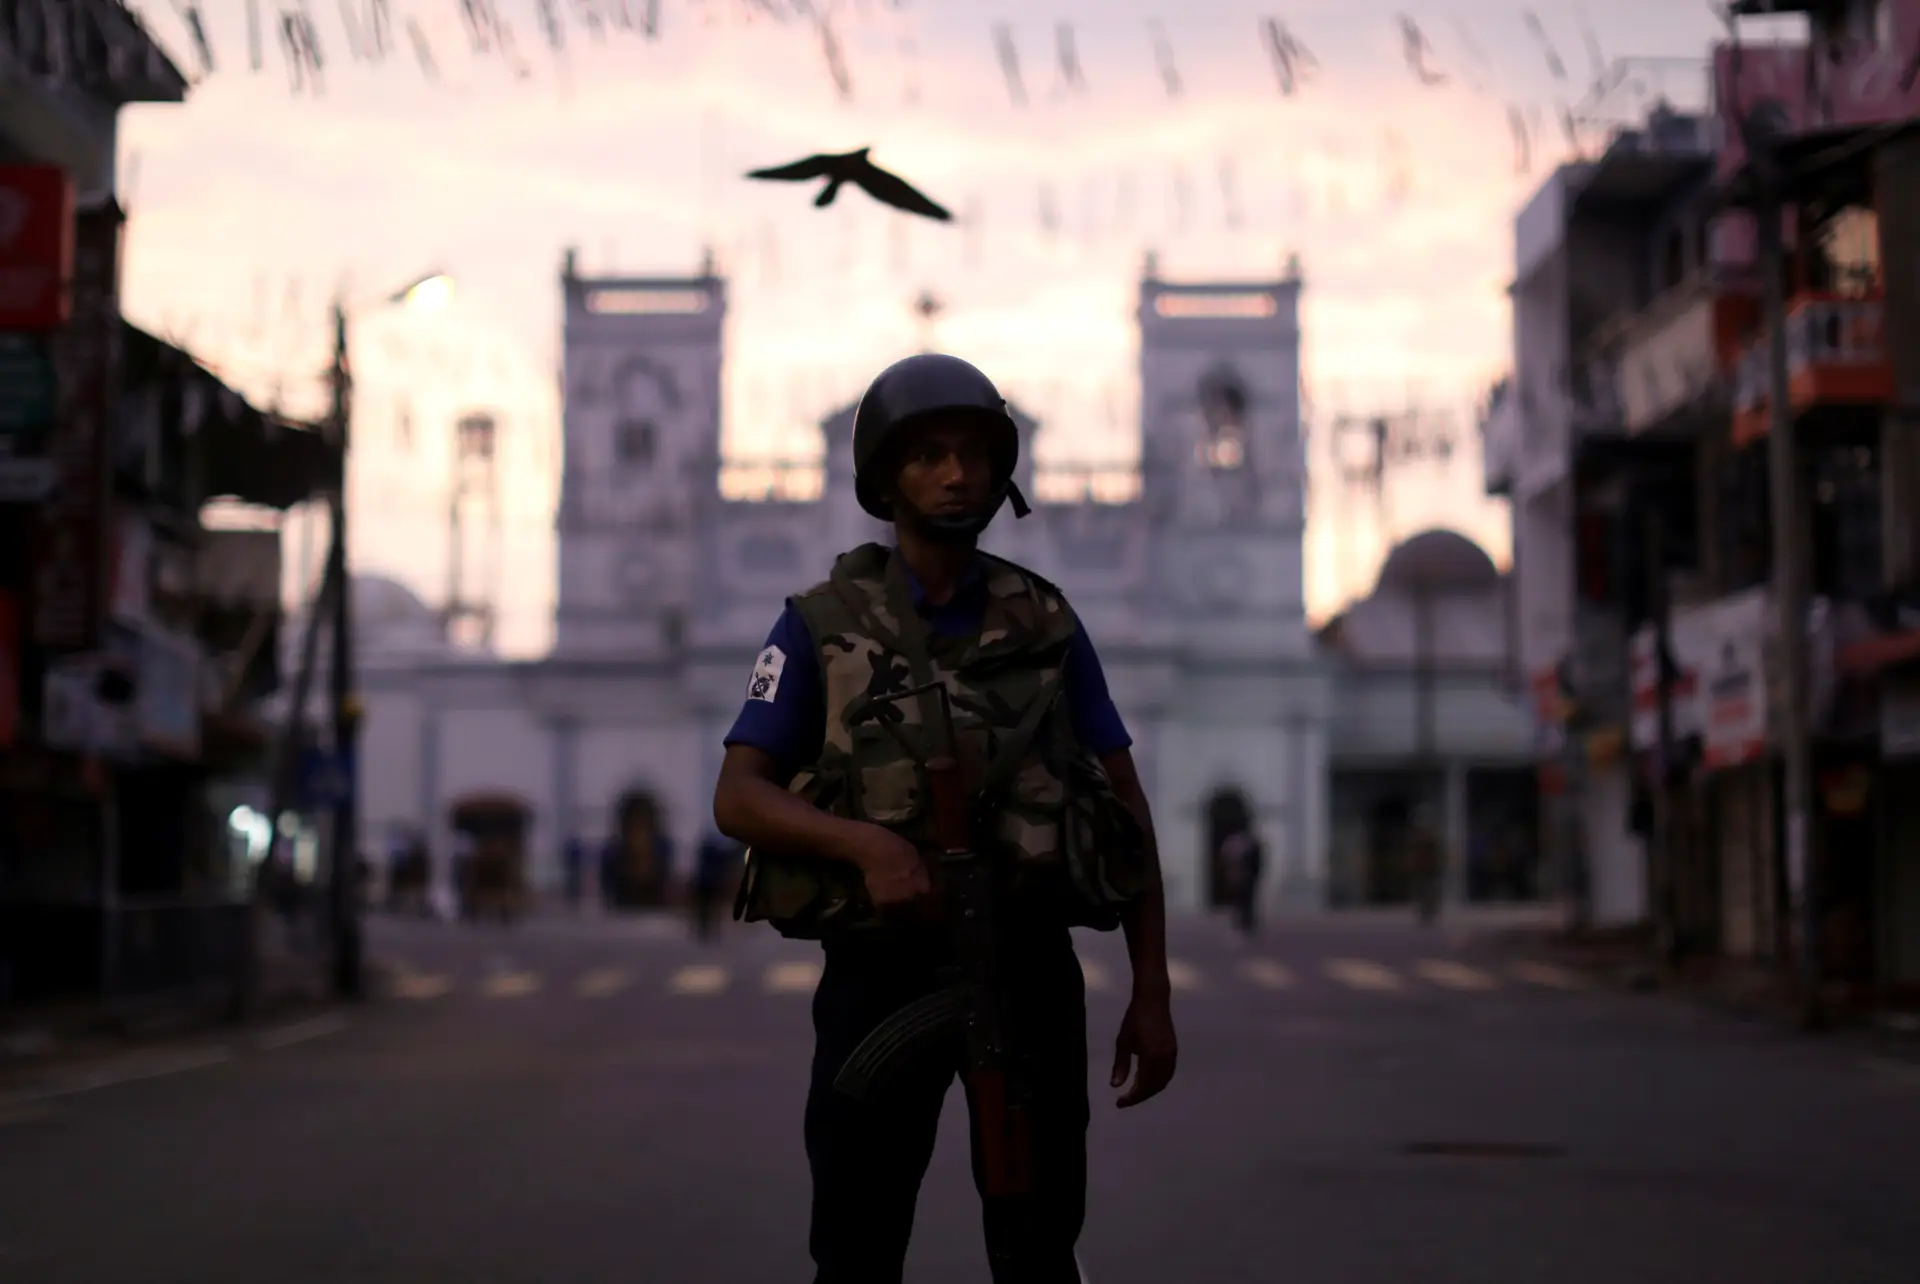 Escolas vão reabrir e missas retomadas após atentados no Sri Lanka